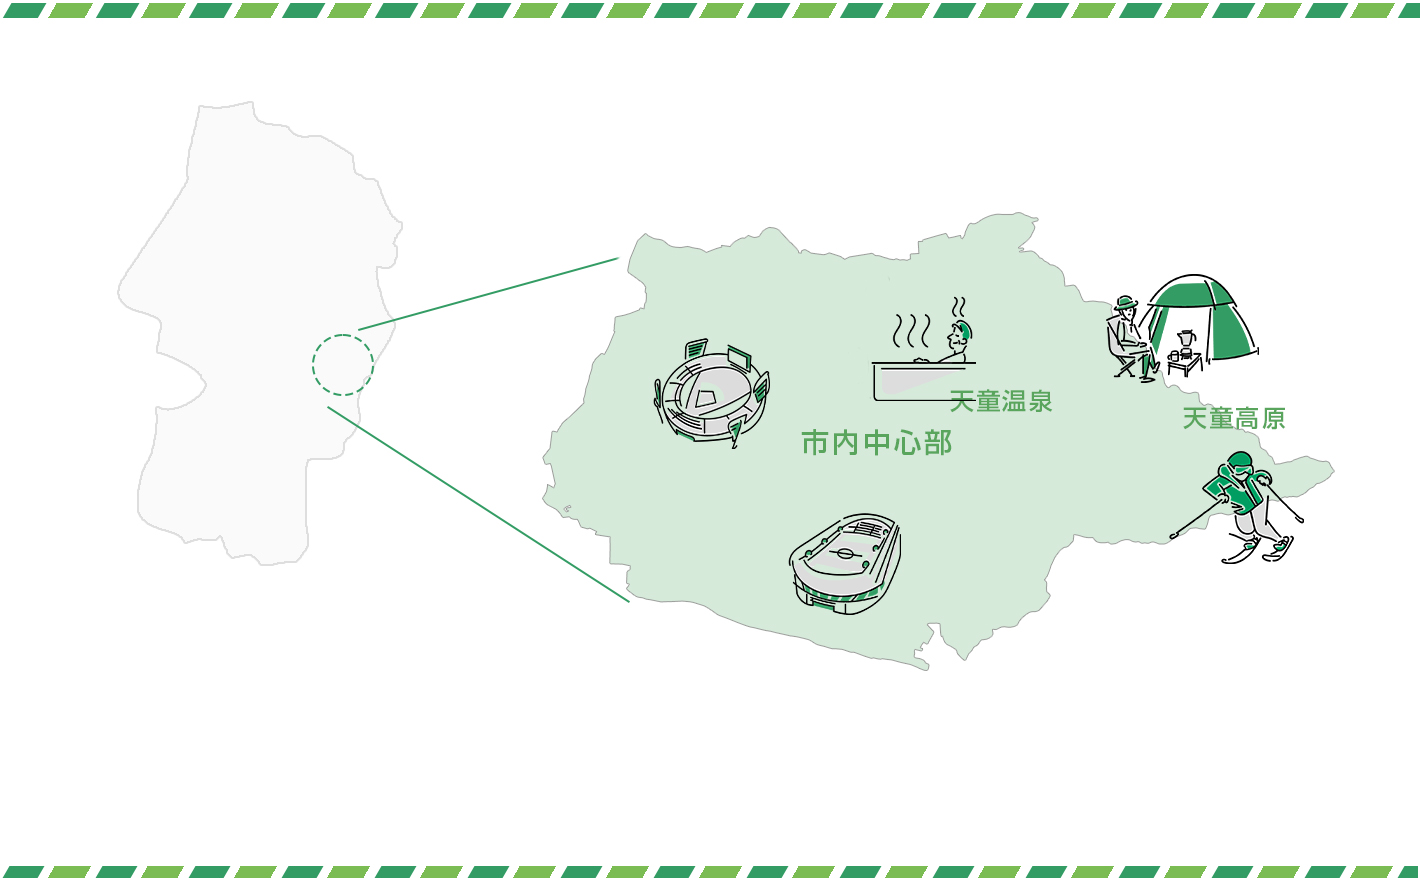 山形県天童市の位置と名産品・名所を示す地図